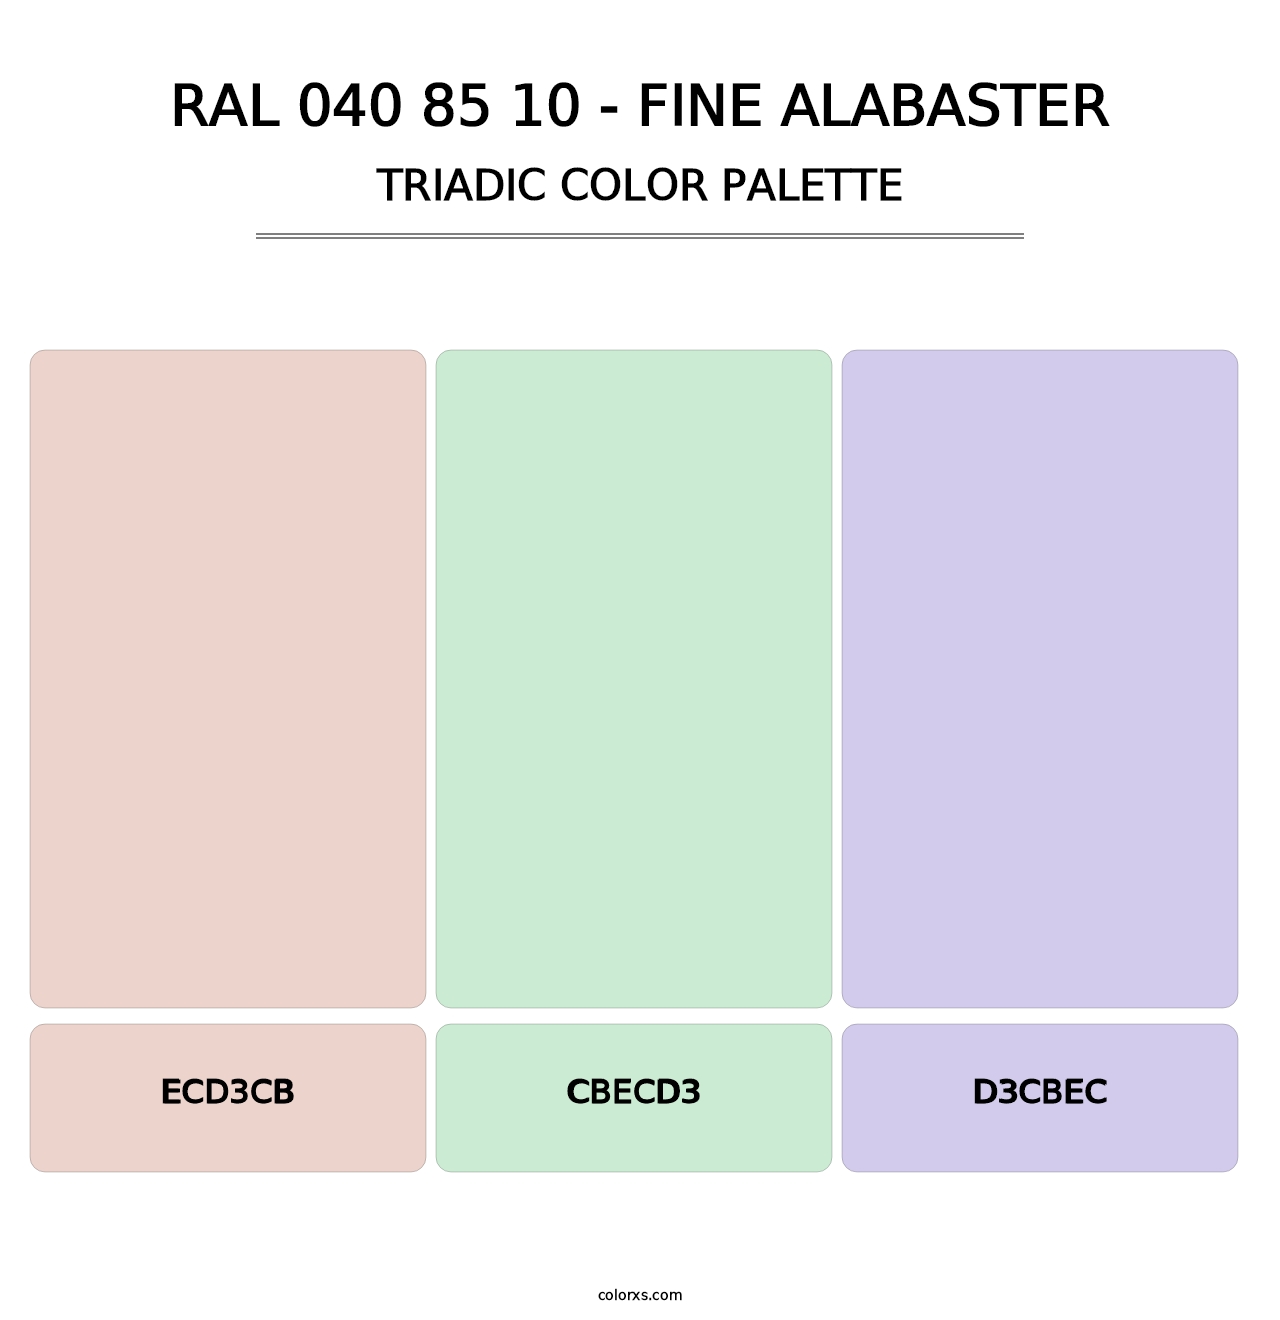 RAL 040 85 10 - Fine Alabaster - Triadic Color Palette